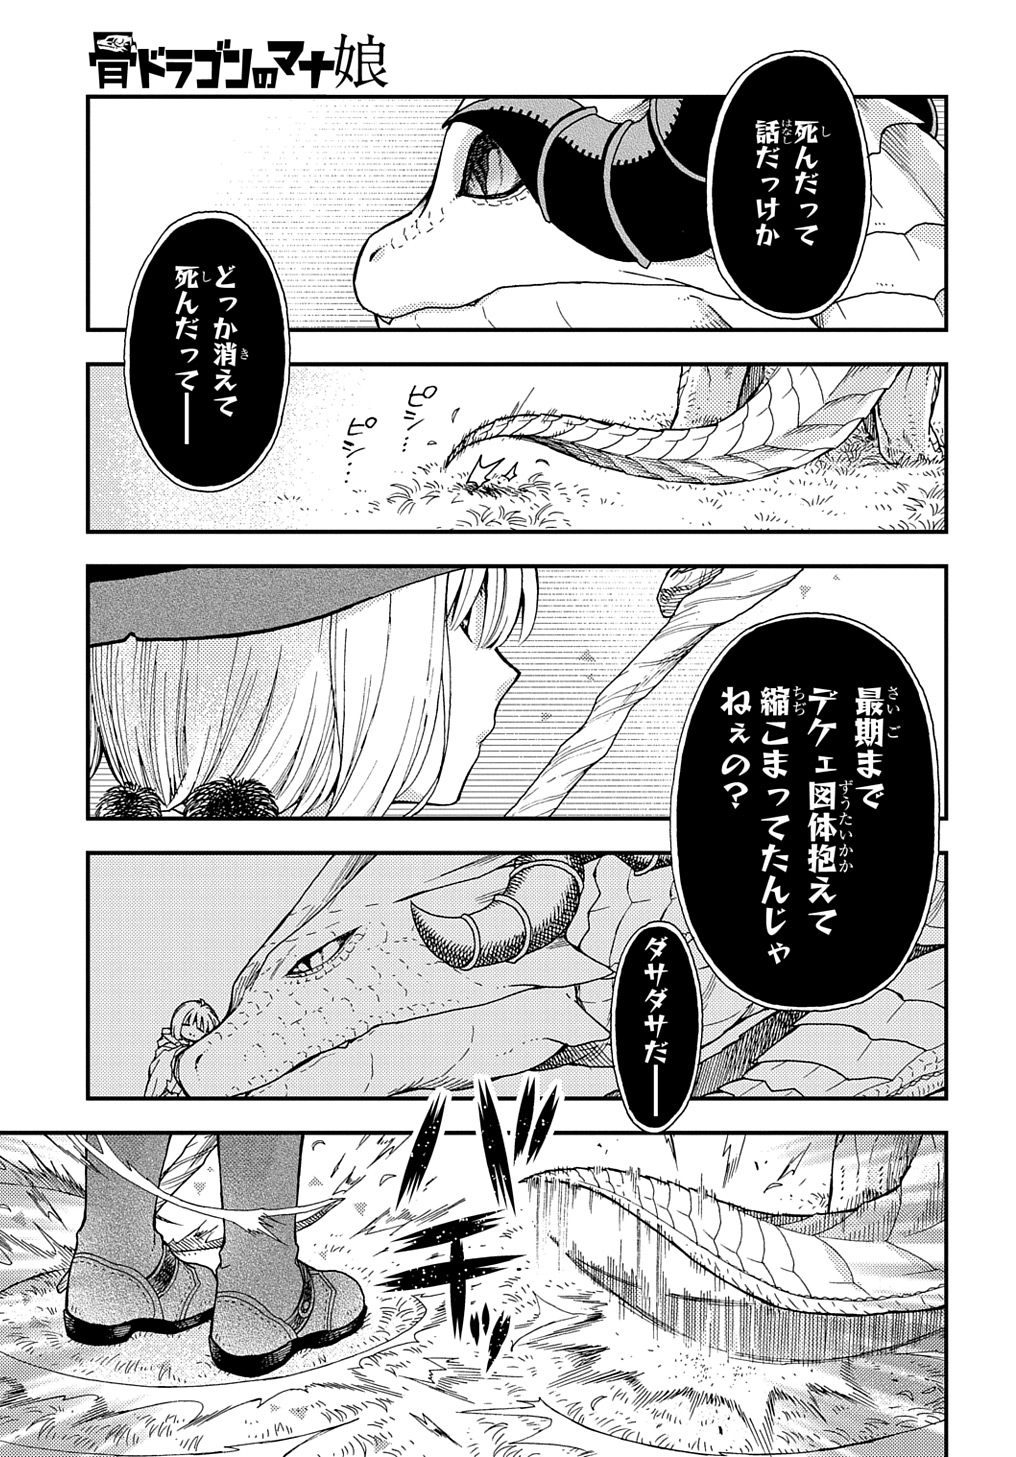 Hone Dragon no Mana Musume - Chapter 30.2 - Page 13